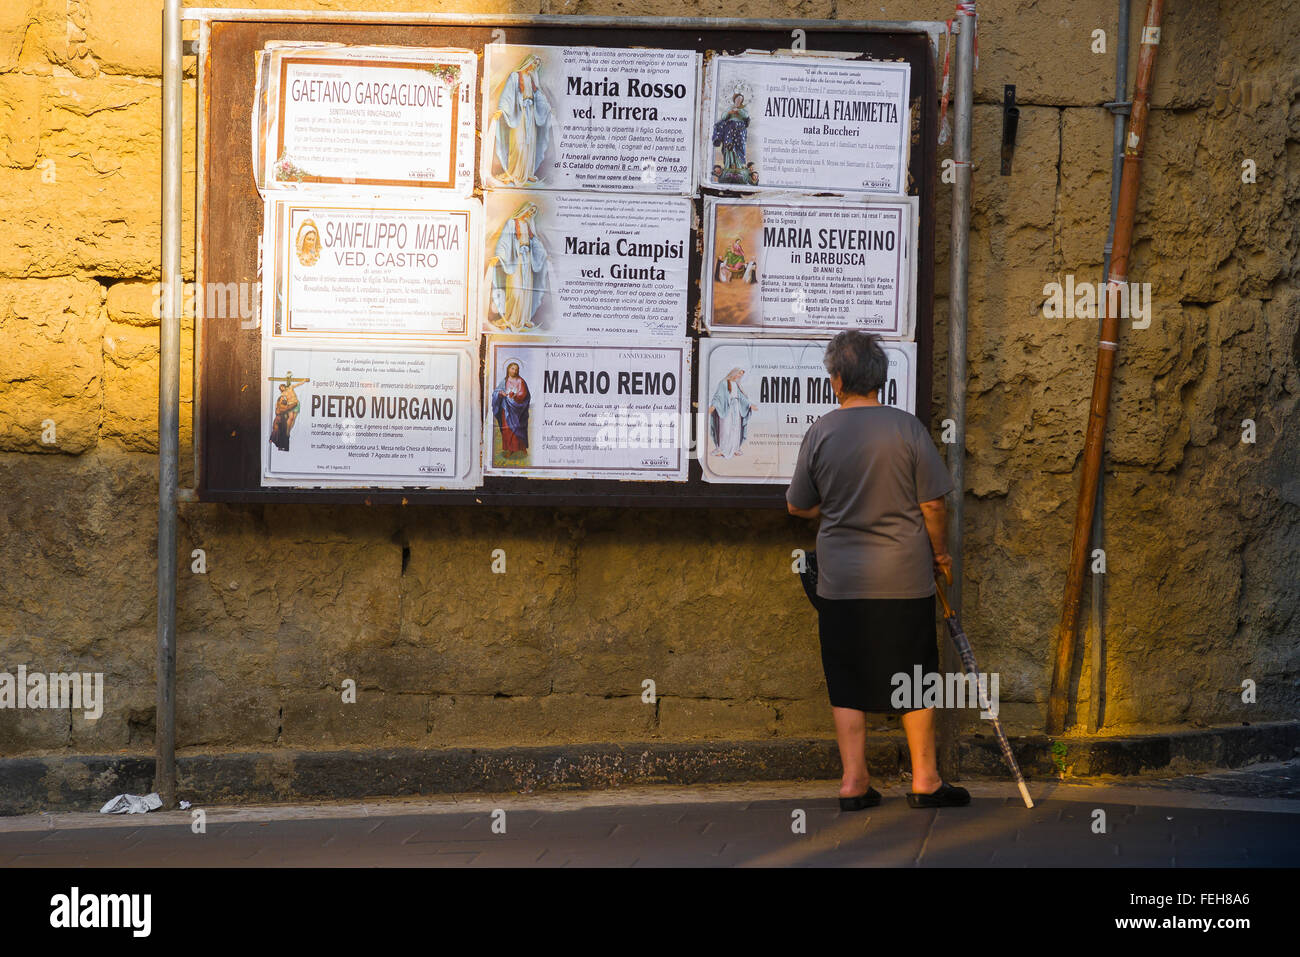 Femme âgée Italie, vue arrière d'une femme locale âgée à Enna, Sicile, s'arrête pour lire les dernières notifications publiques de funérailles dans la communauté. Banque D'Images